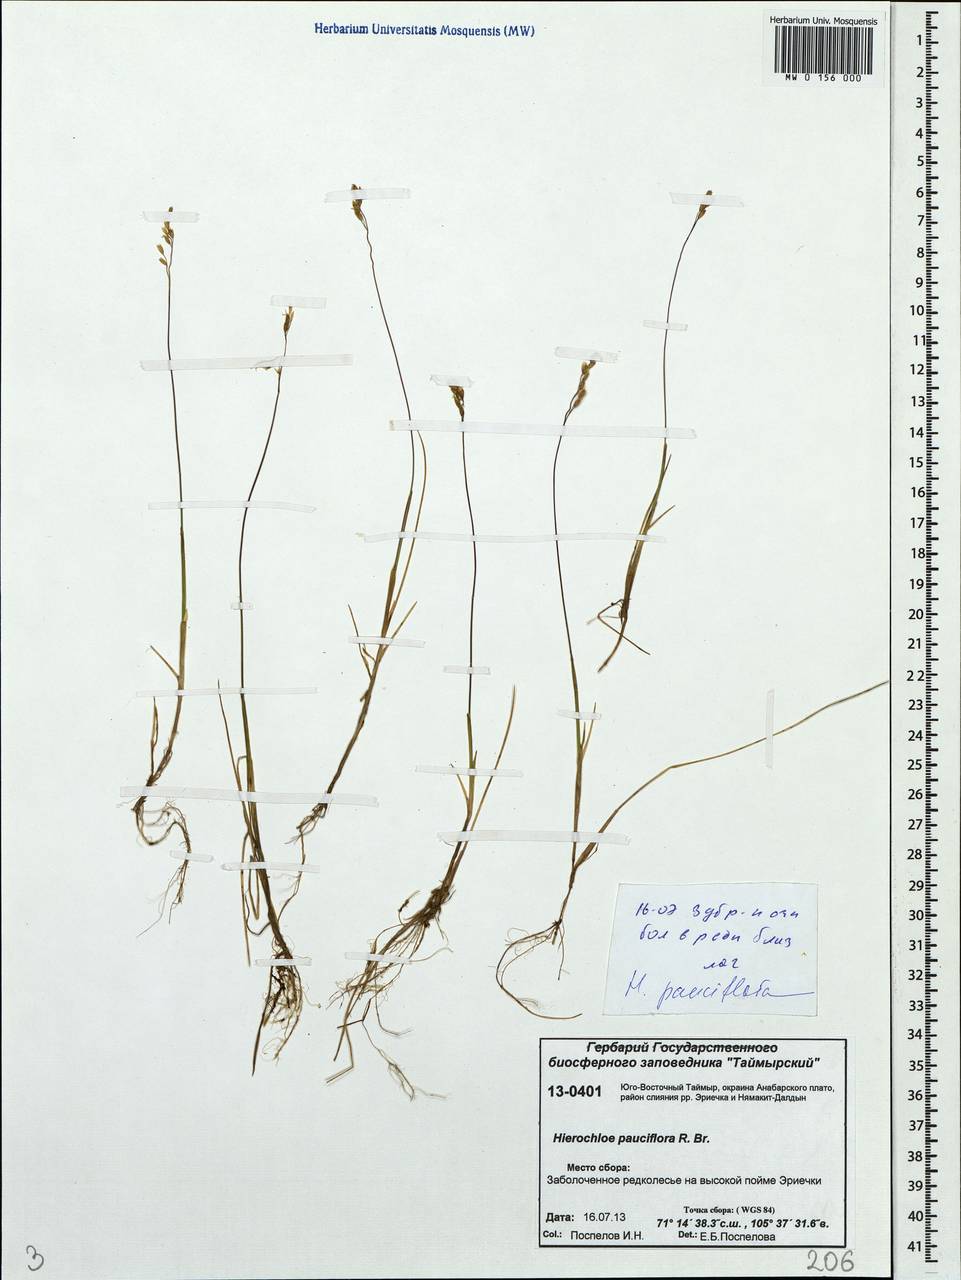 Anthoxanthum arcticum Veldkamp, Сибирь, Центральная Сибирь (S3) (Россия)